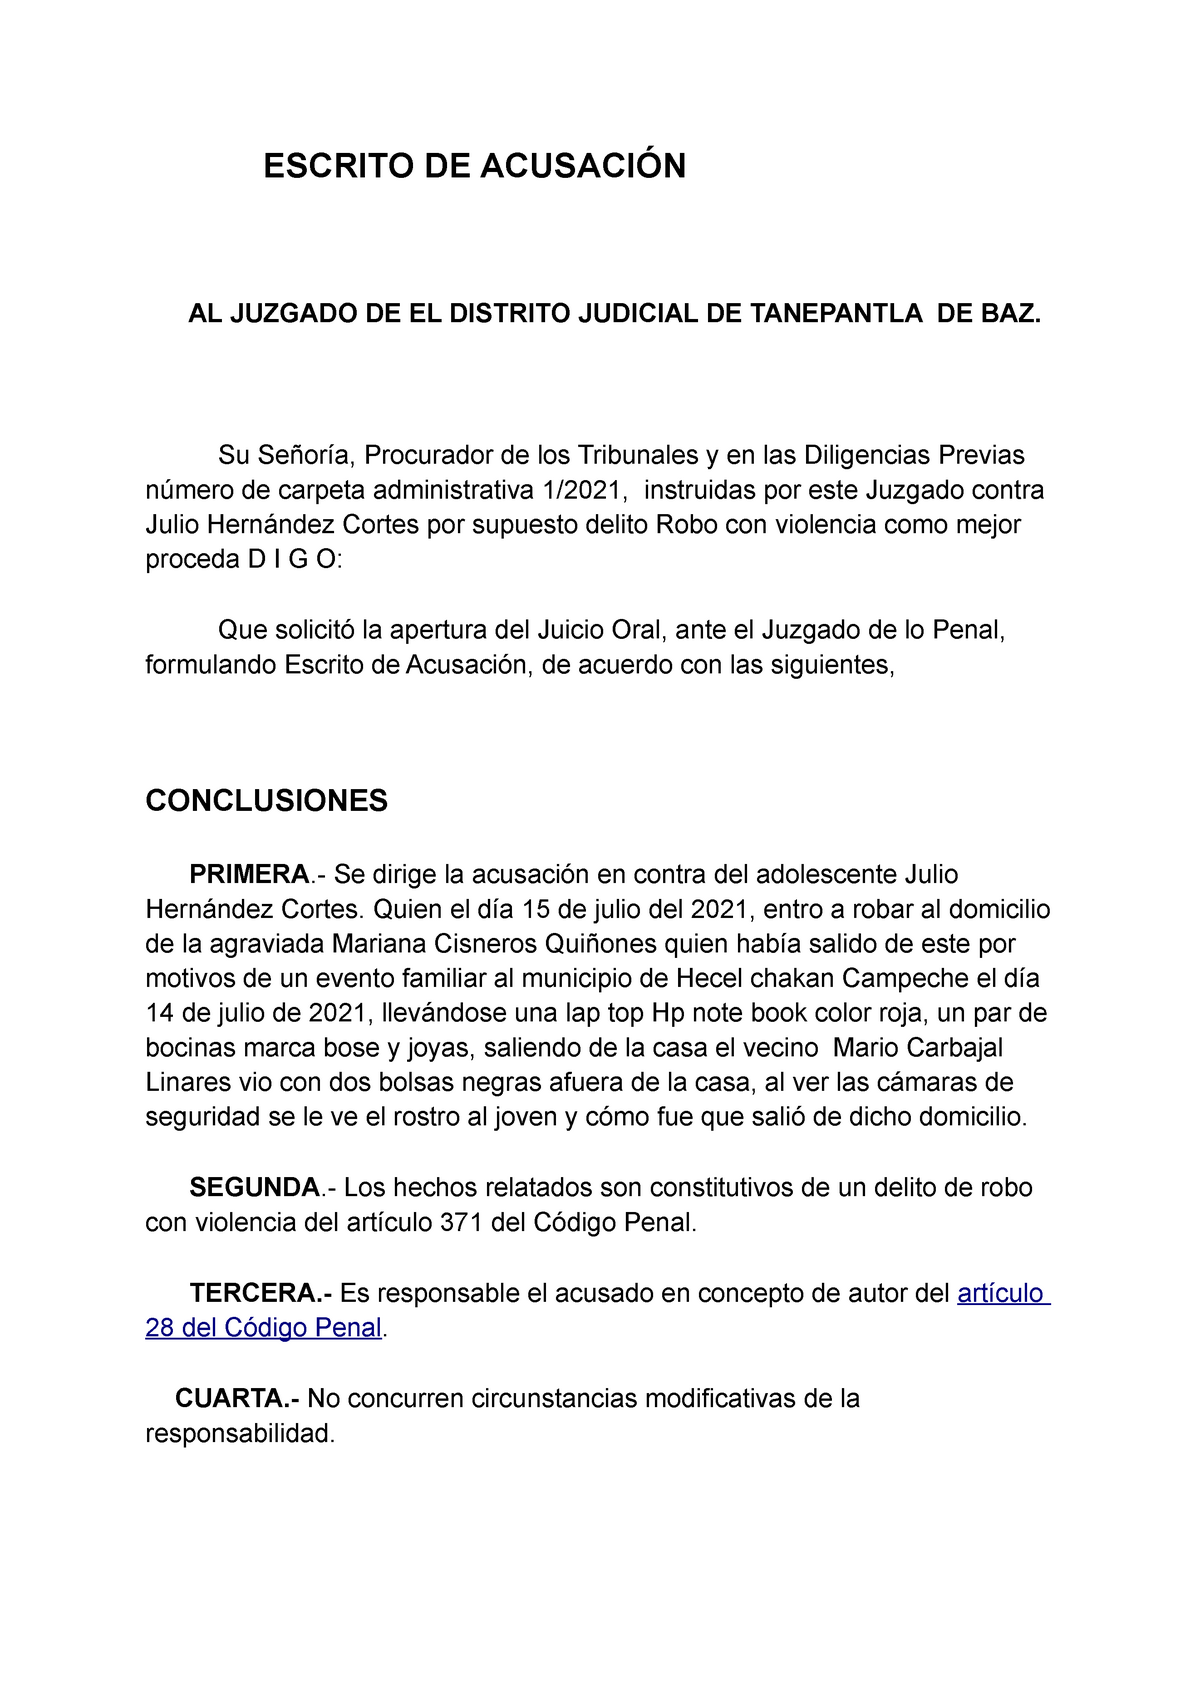 Modelo Escrito de Acusación - ESCRITO DE ACUSACIÓN AL JUZGADO DE EL  DISTRITO JUDICIAL DE TANEPANTLA - Studocu